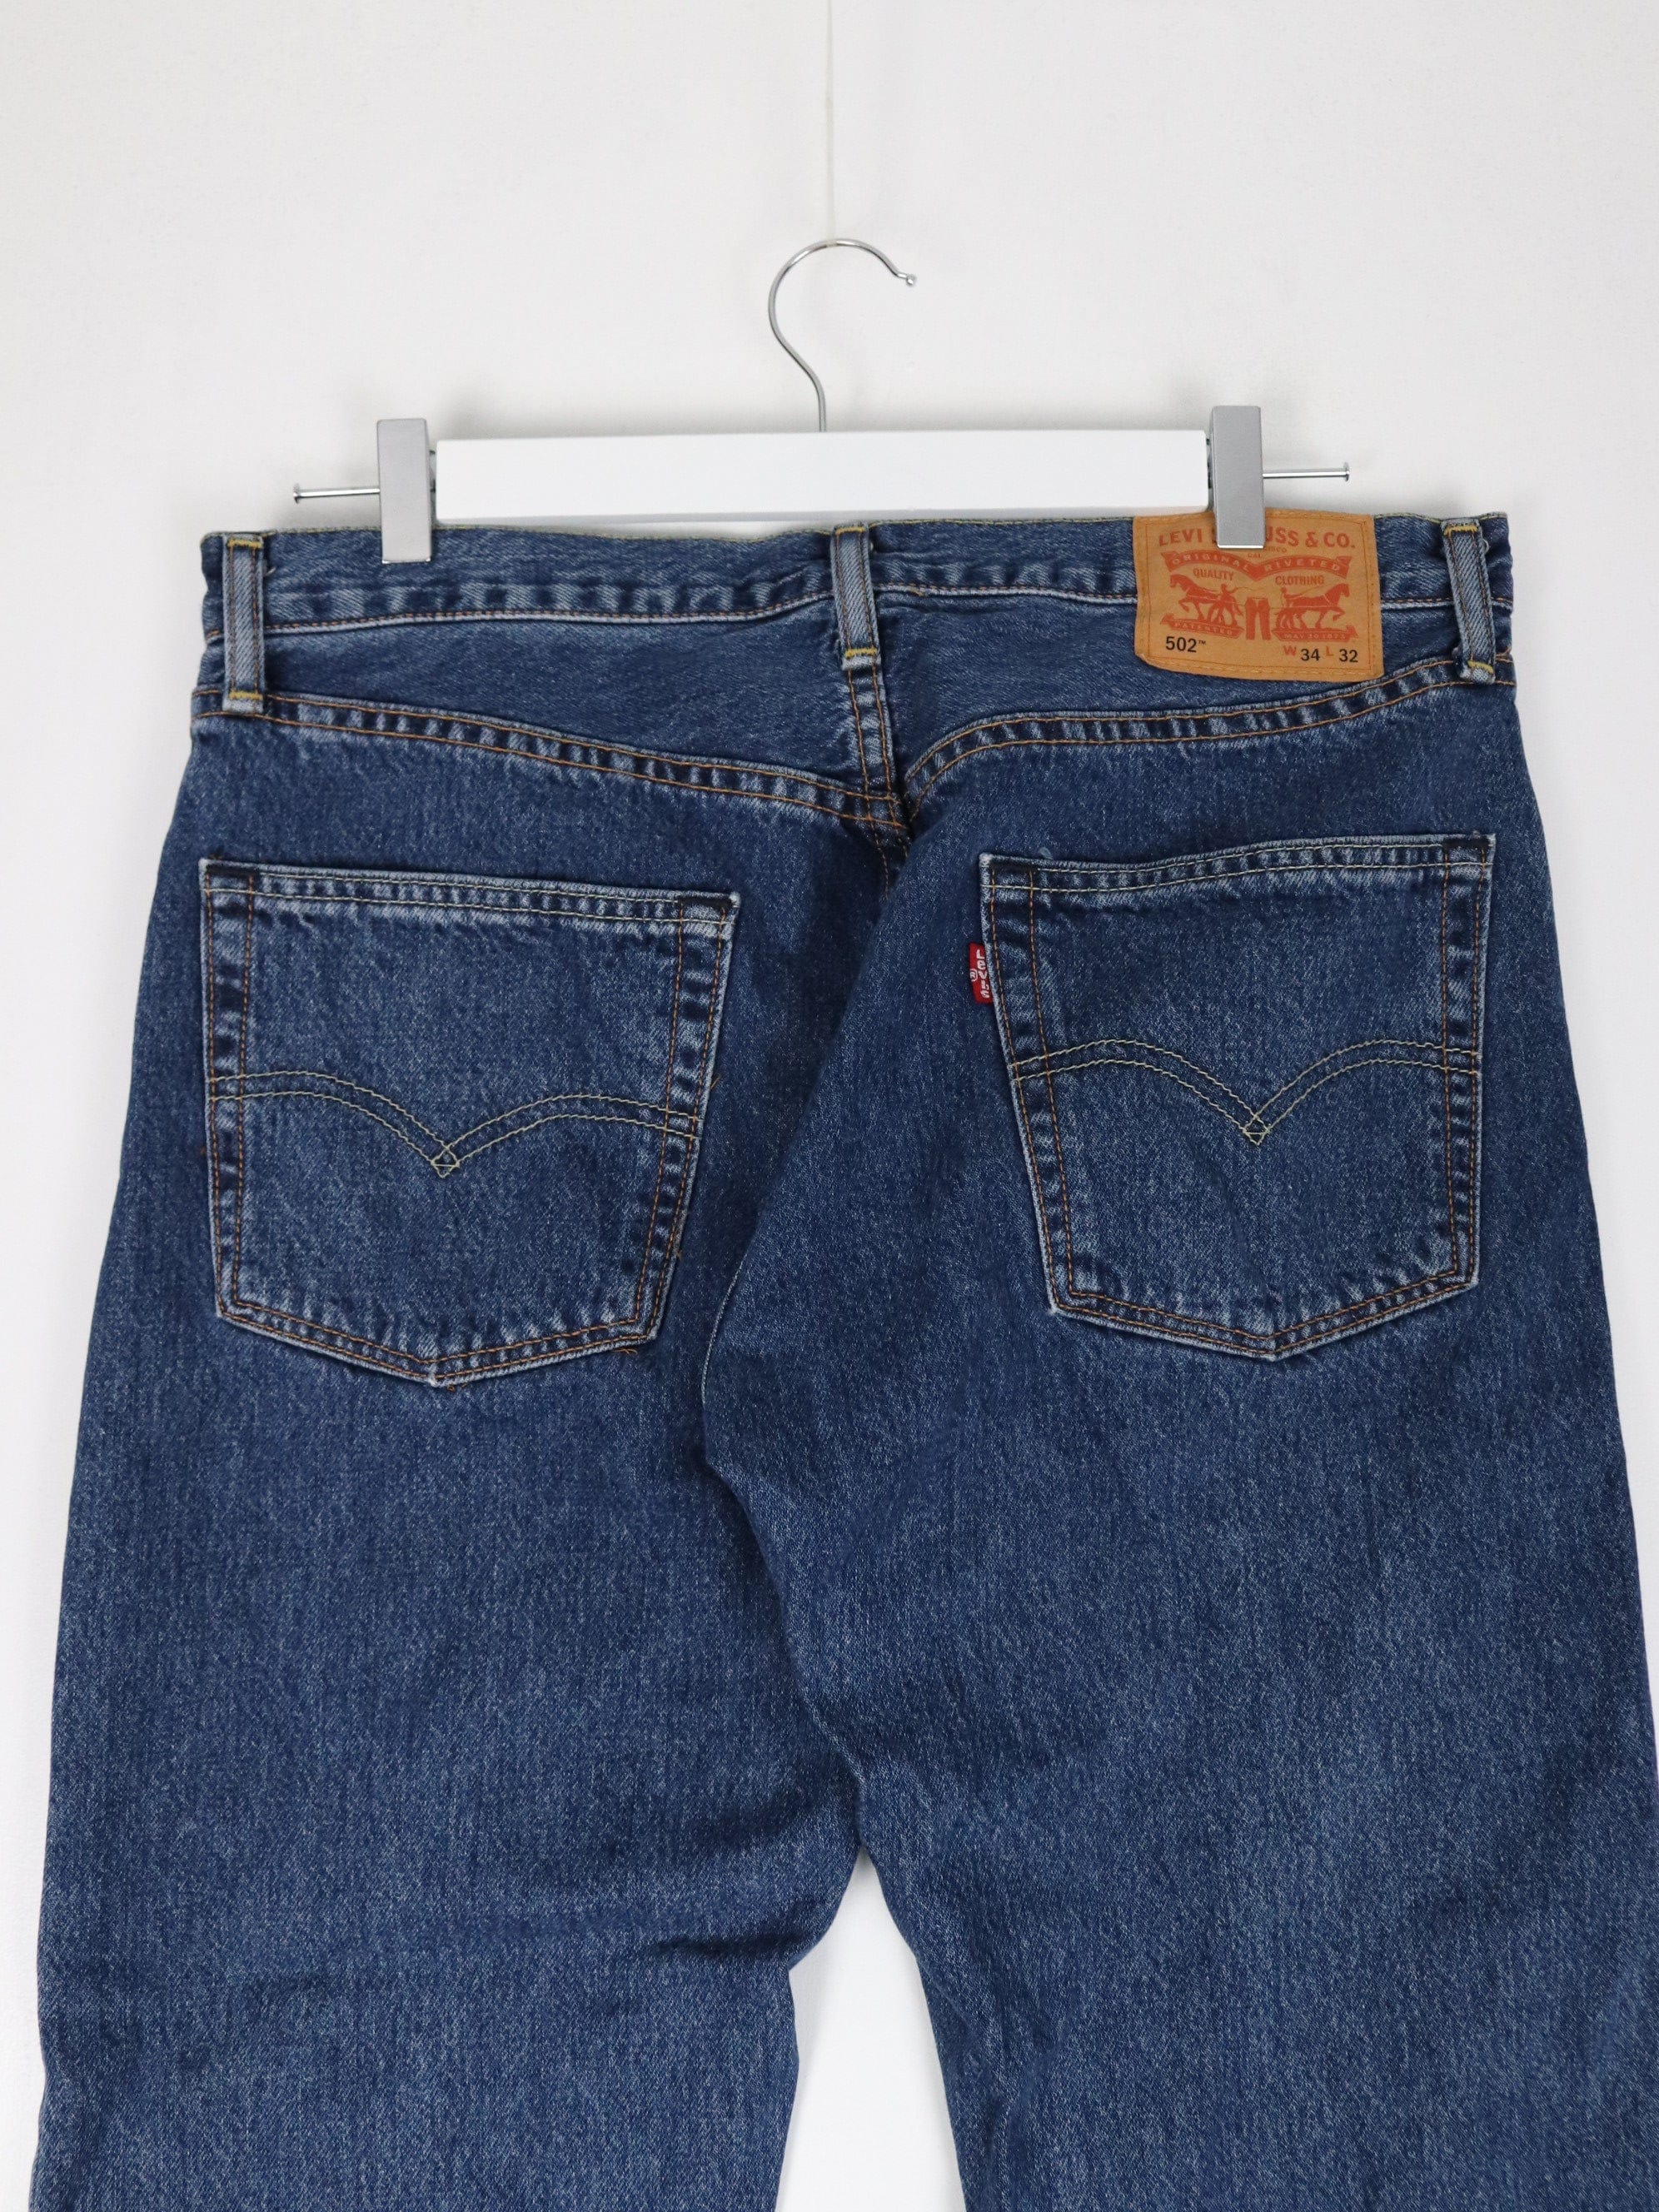 34 x 34 Pants & Jeans for Men